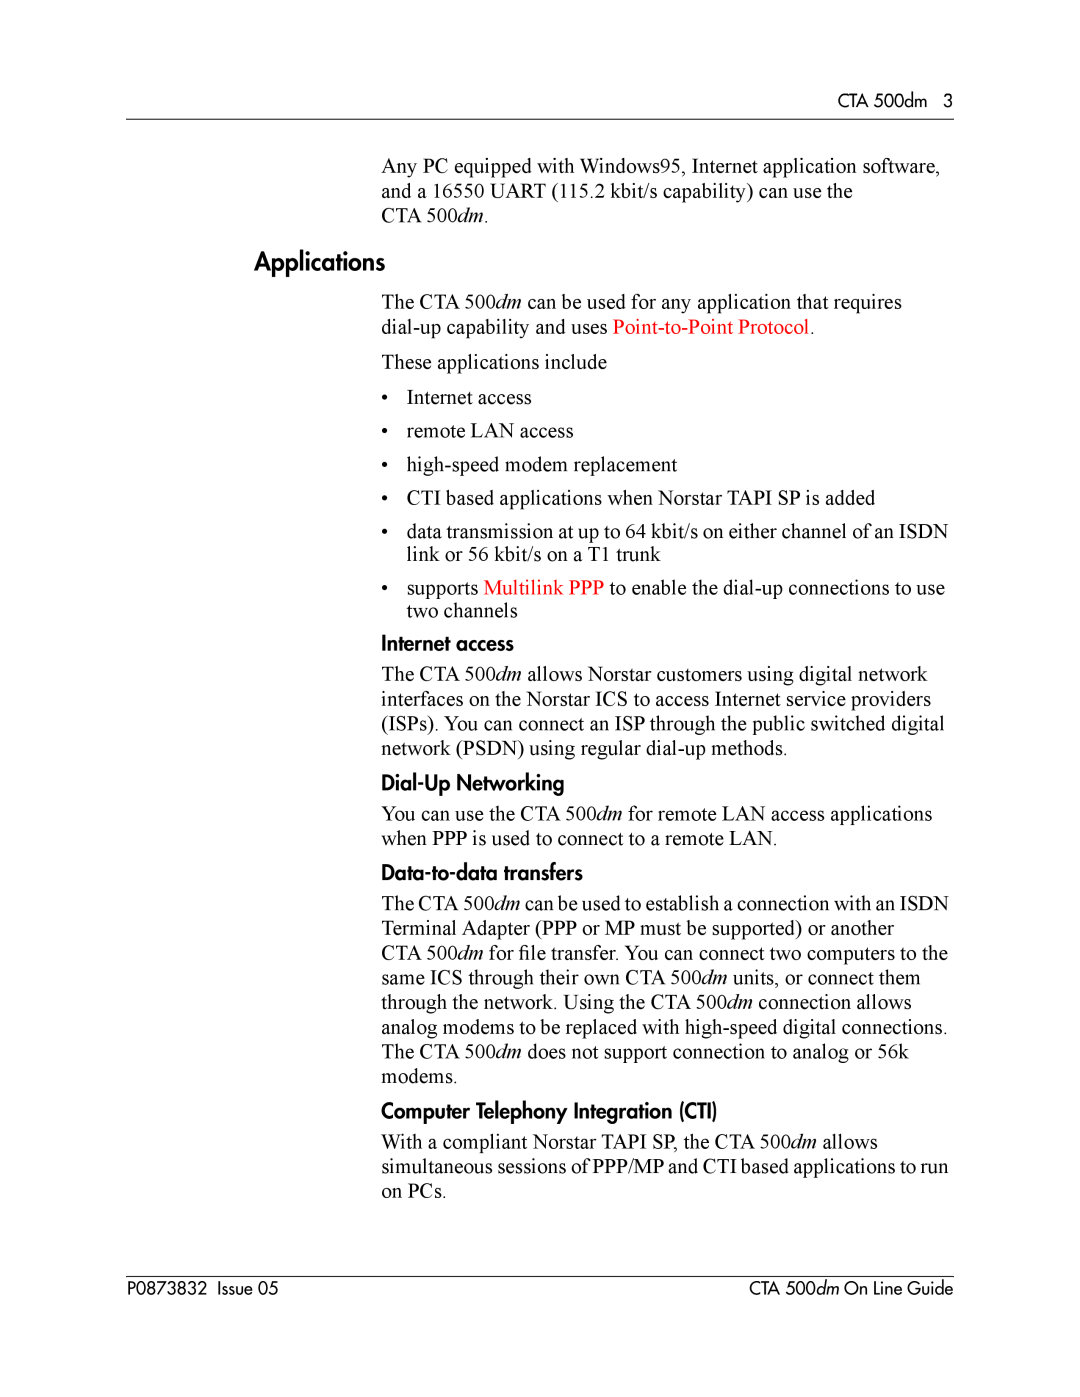 Nortel Networks CTA 500dm manual Applications 